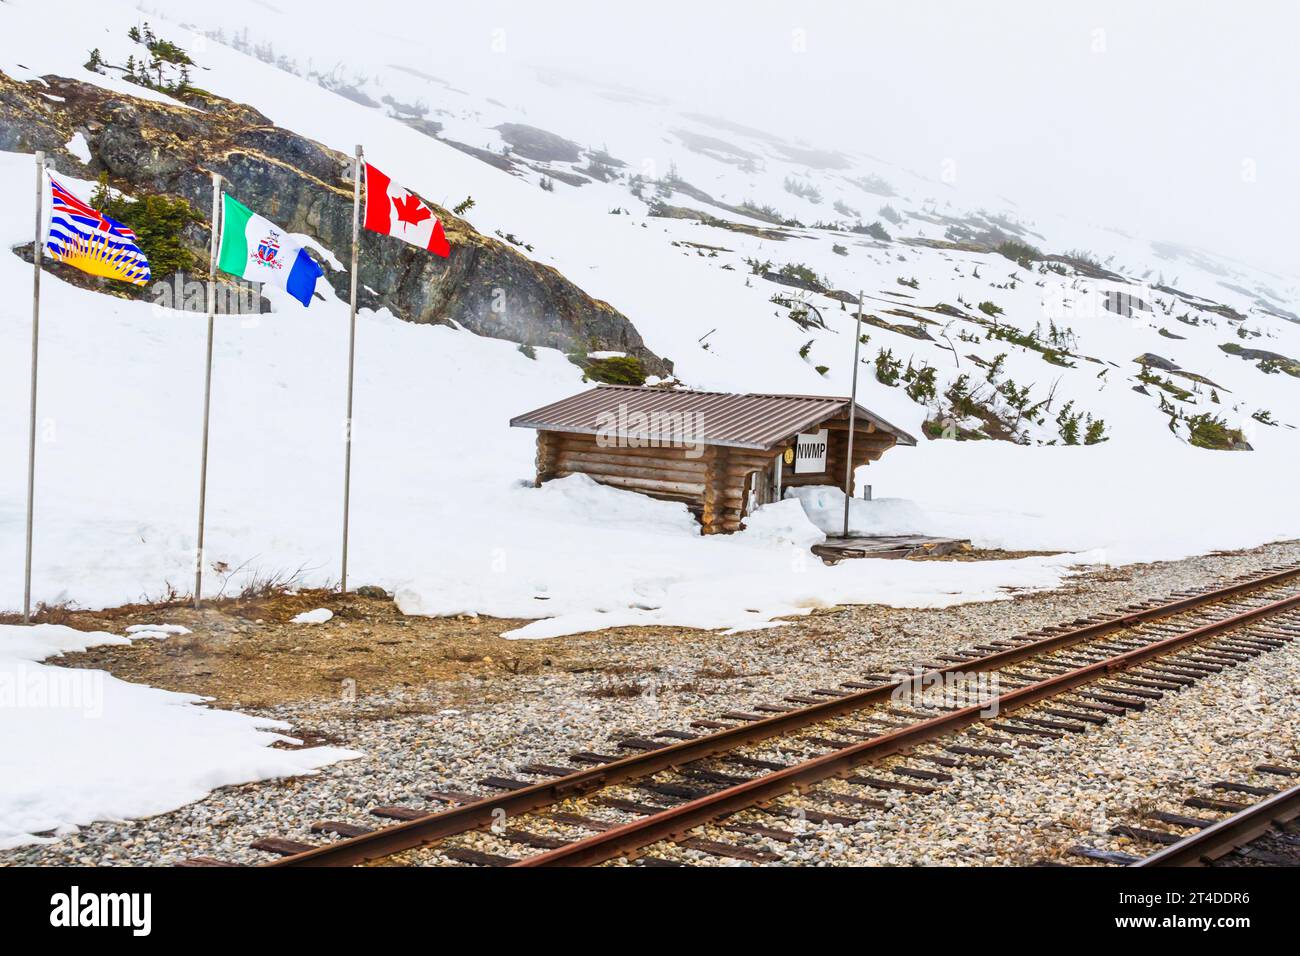 Die Zugfahrt mit dem White Pass and Yukon Route (WP&YR) Railroad von Skagway, Alaska nach Fraser, British Columbia, nutzt die unglaubliche technische Leistung. Stockfoto